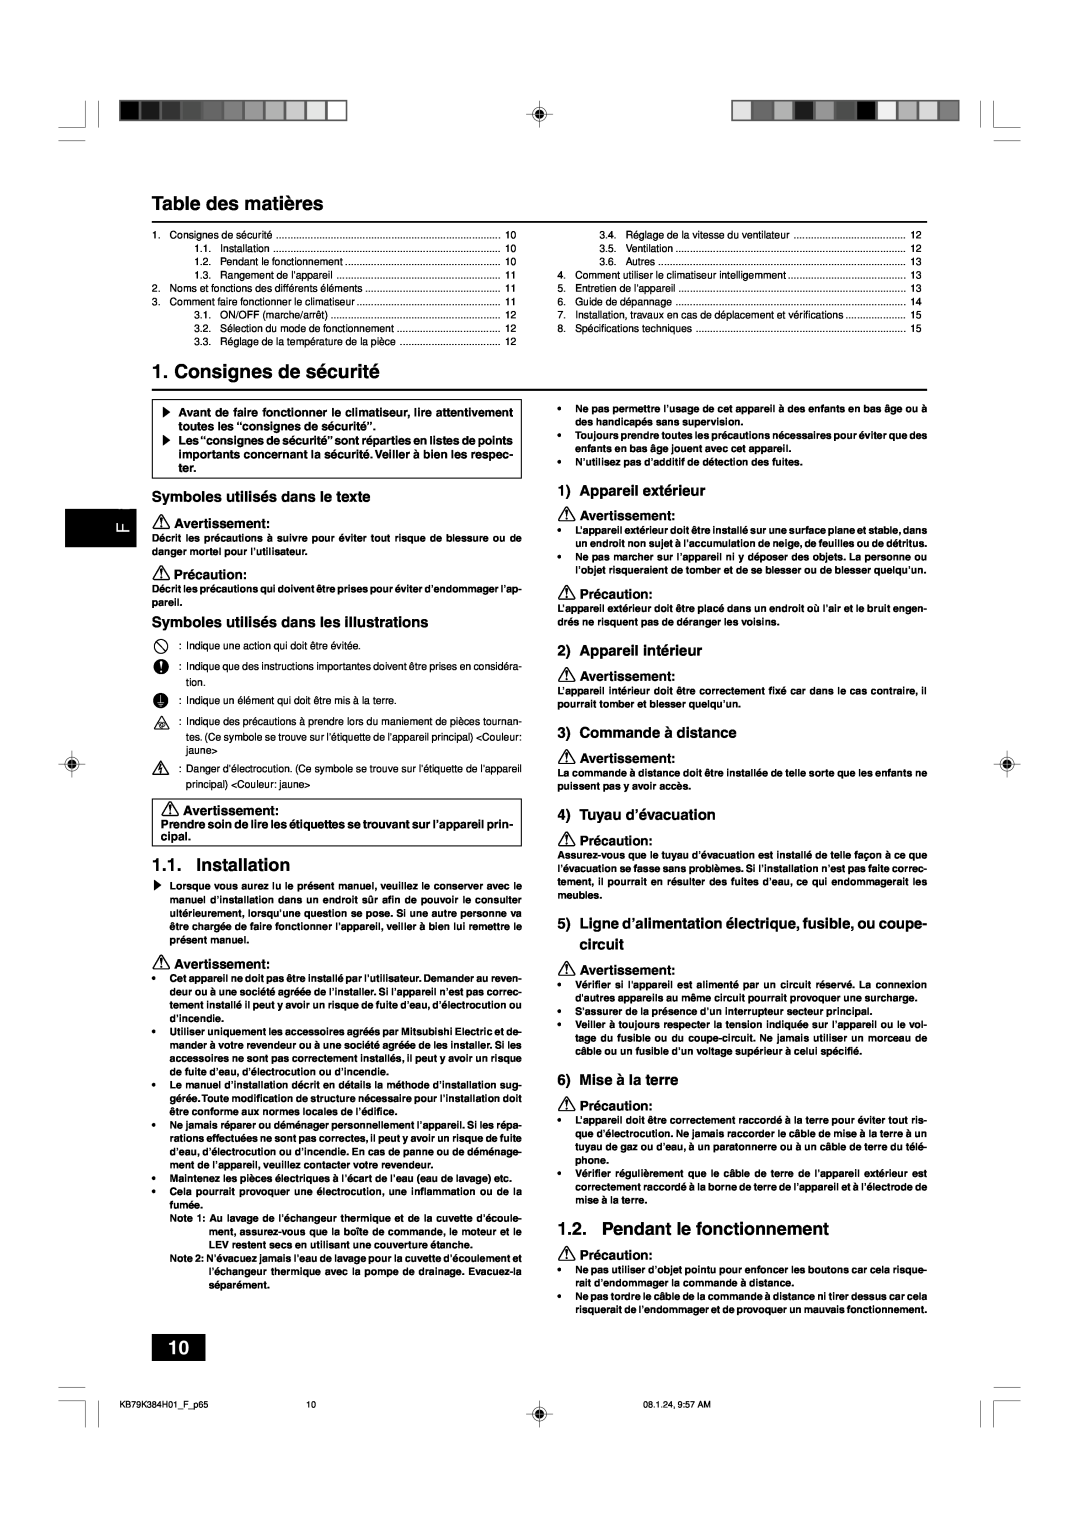 Maytag P24 NMSU-E Table des matières, Consignes de sécurité, Pendant le fonctionnement, Symboles utilisés dans le texte 